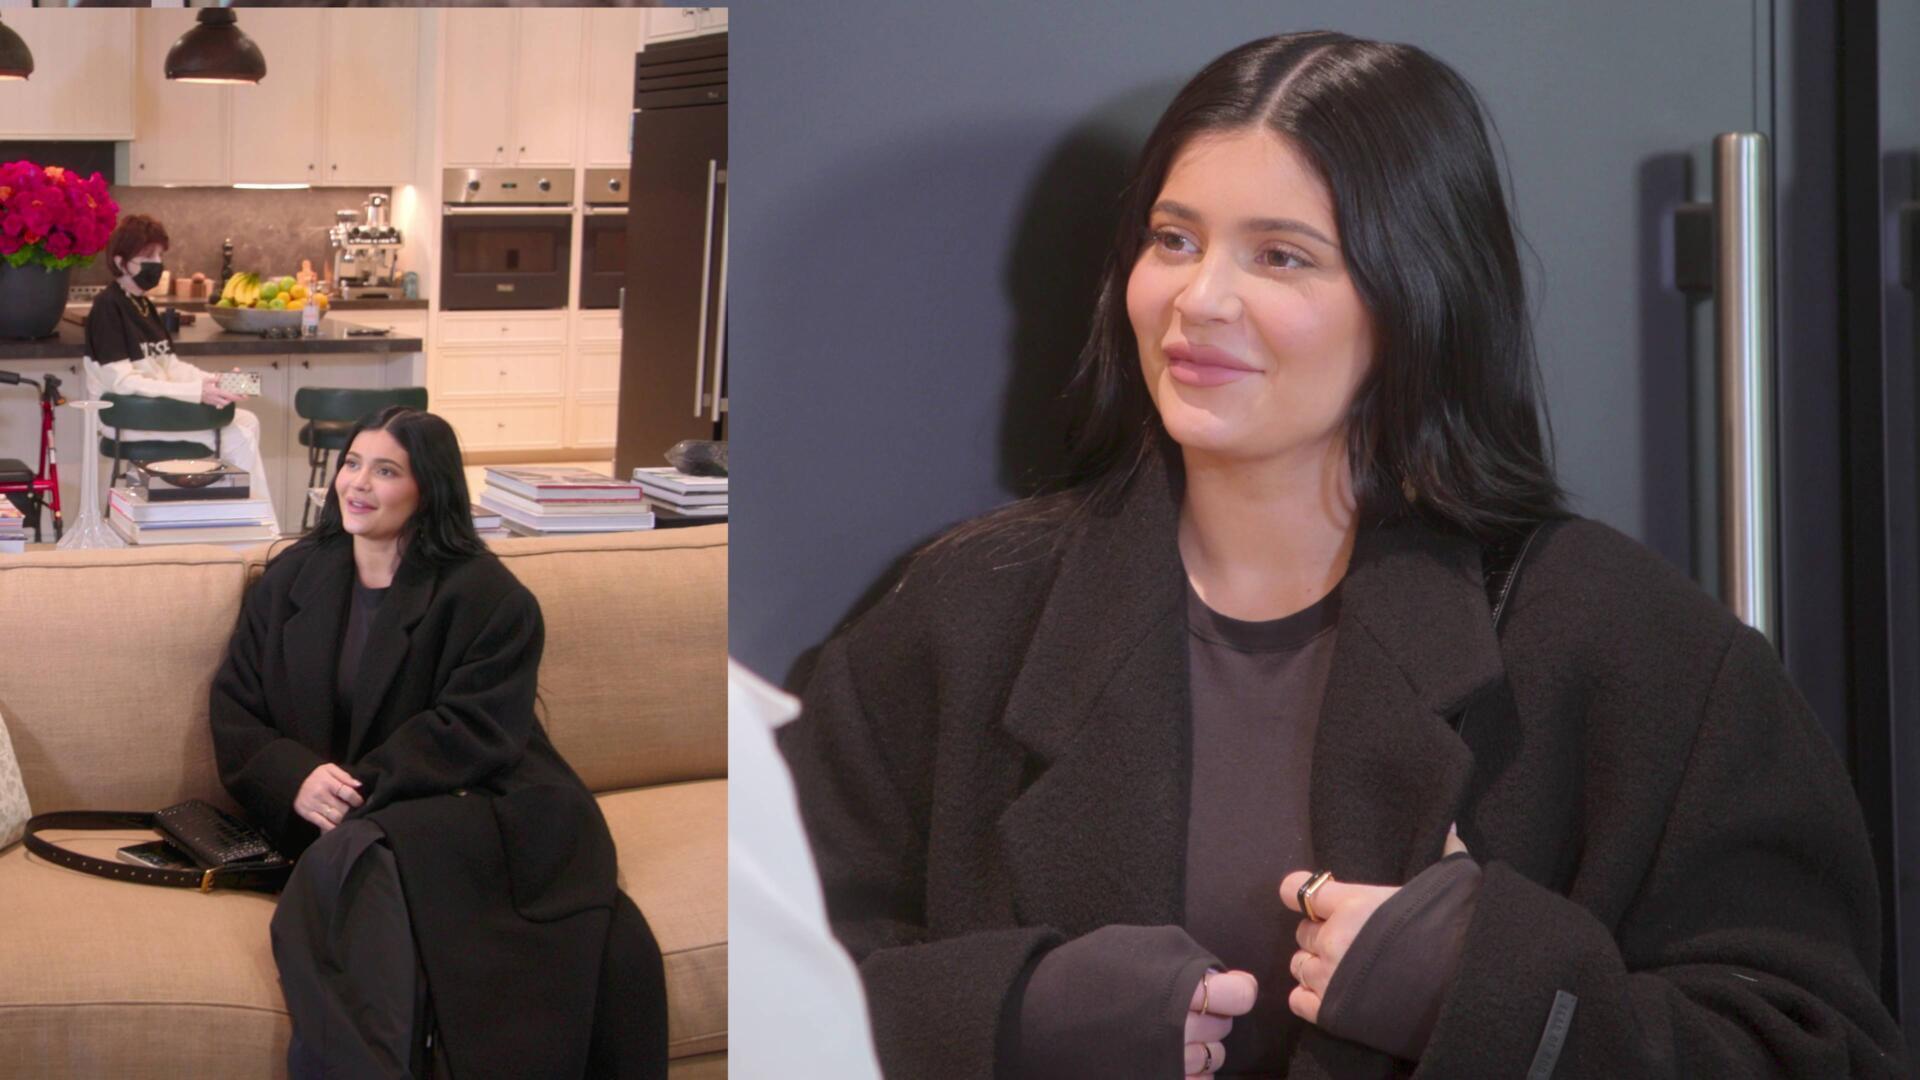 Kylie Jenner – The Kardashians | Season 2 Episode 2 | Kylie Jenner style